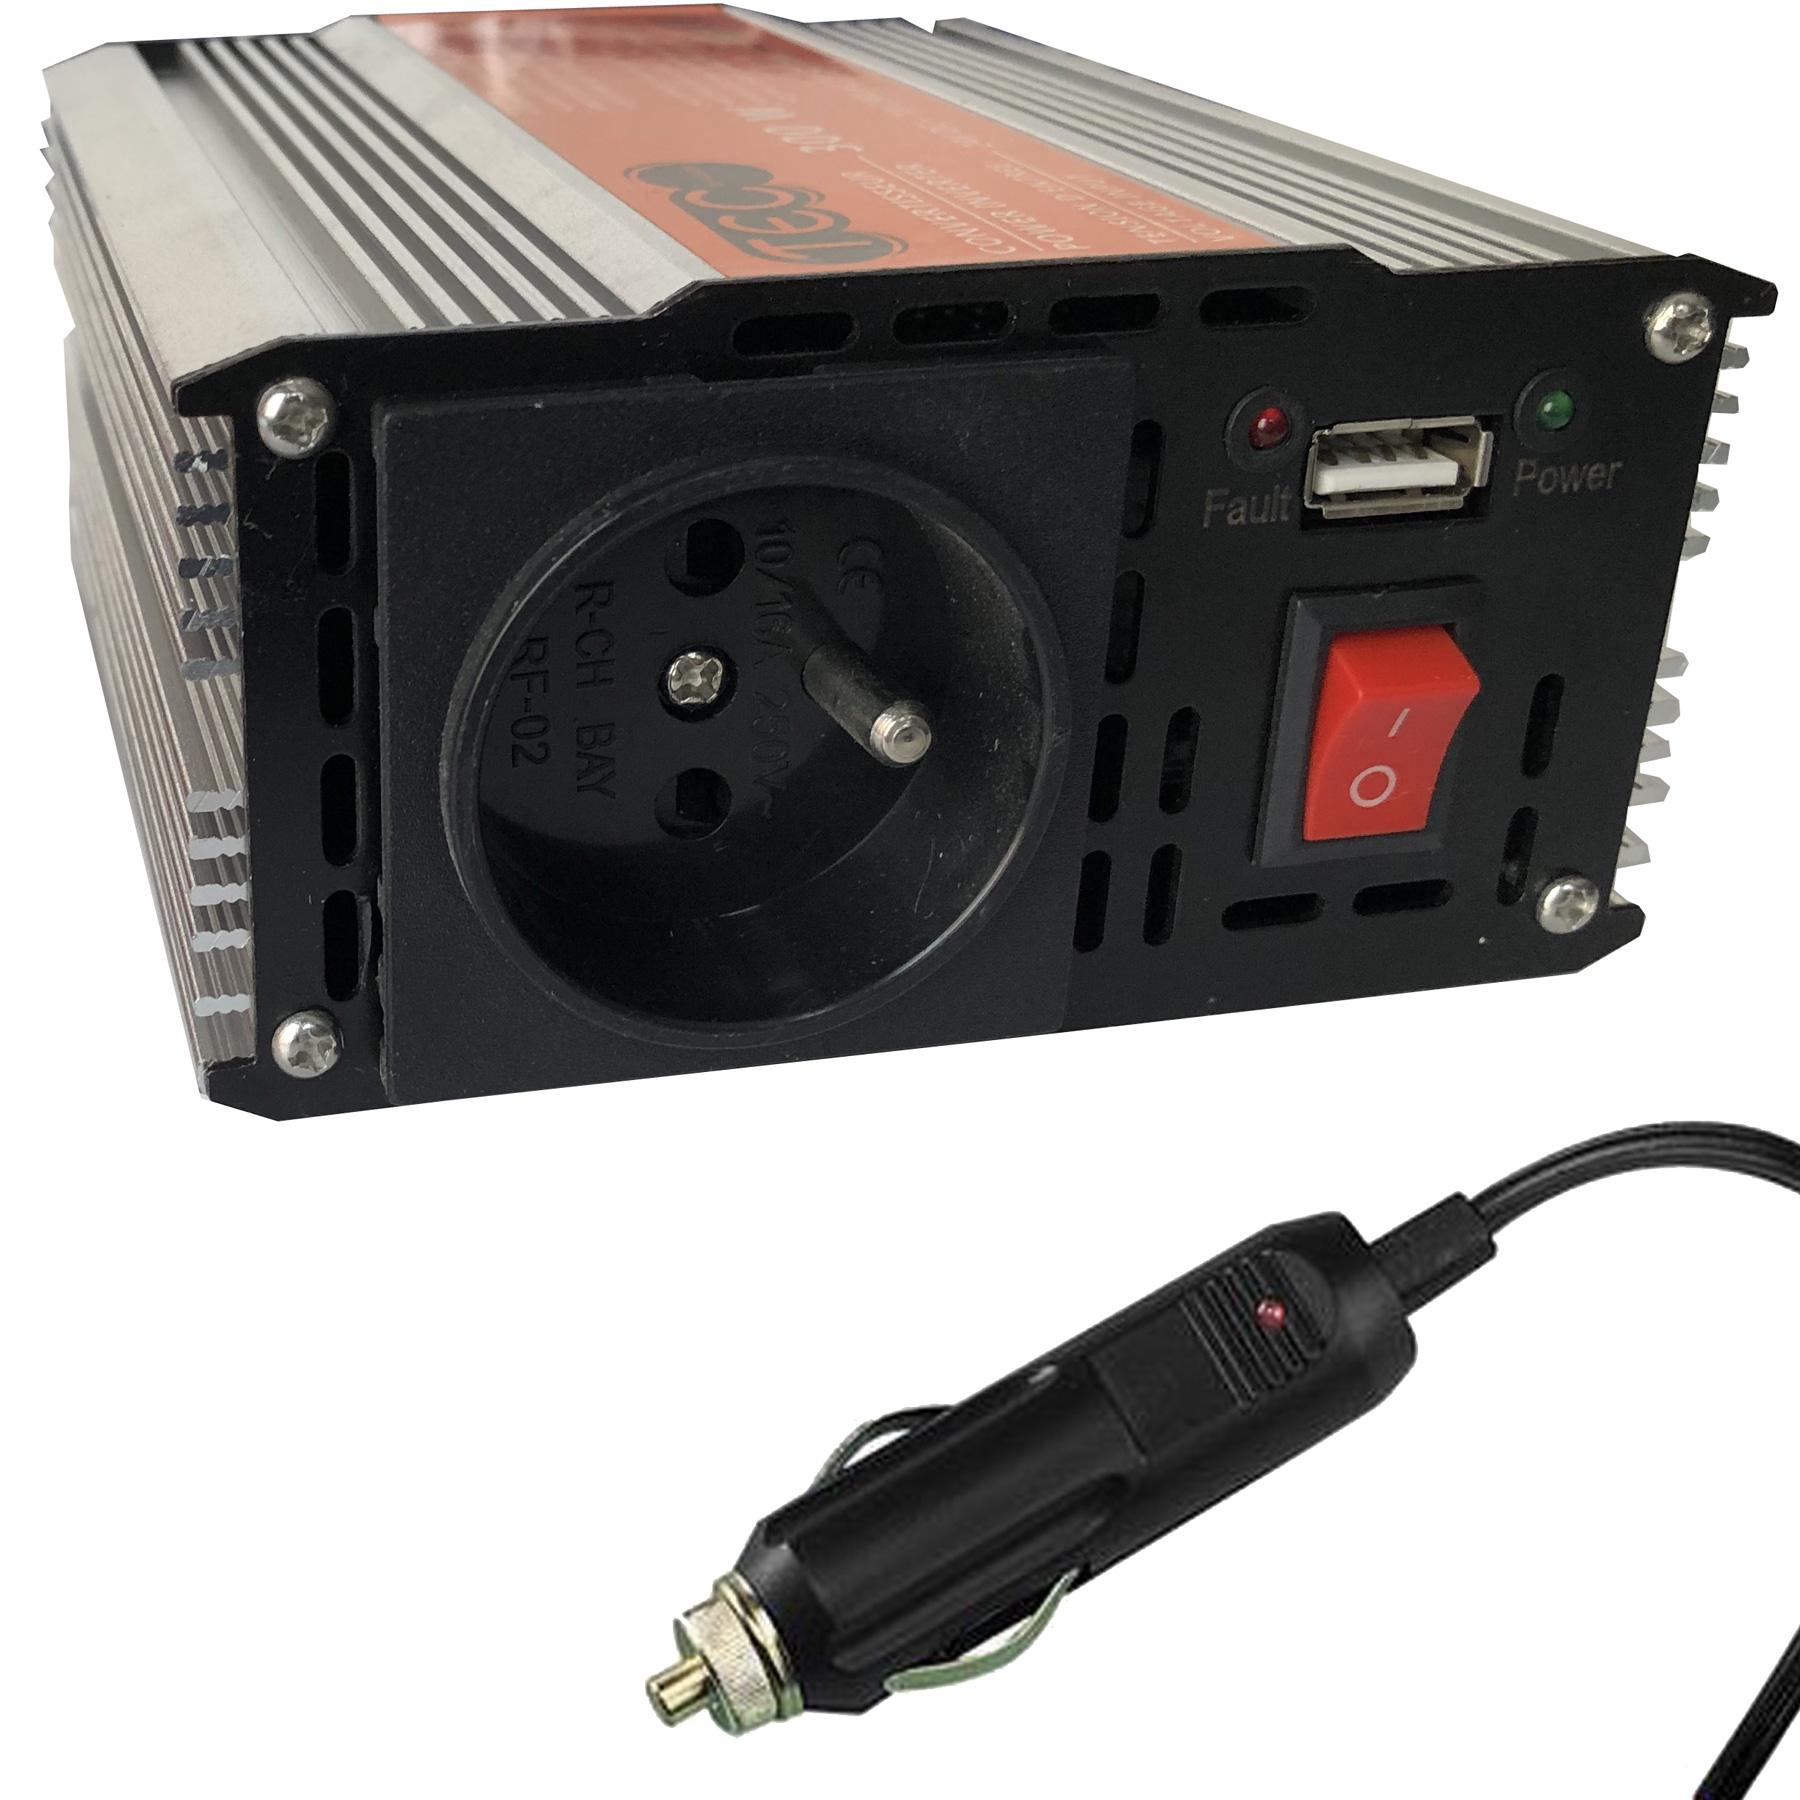 Les produits   Accessoire TV, téléphonie, informatique -  Convertisseur allume cigare FPE 12V en 230V 300W avec 2 USB